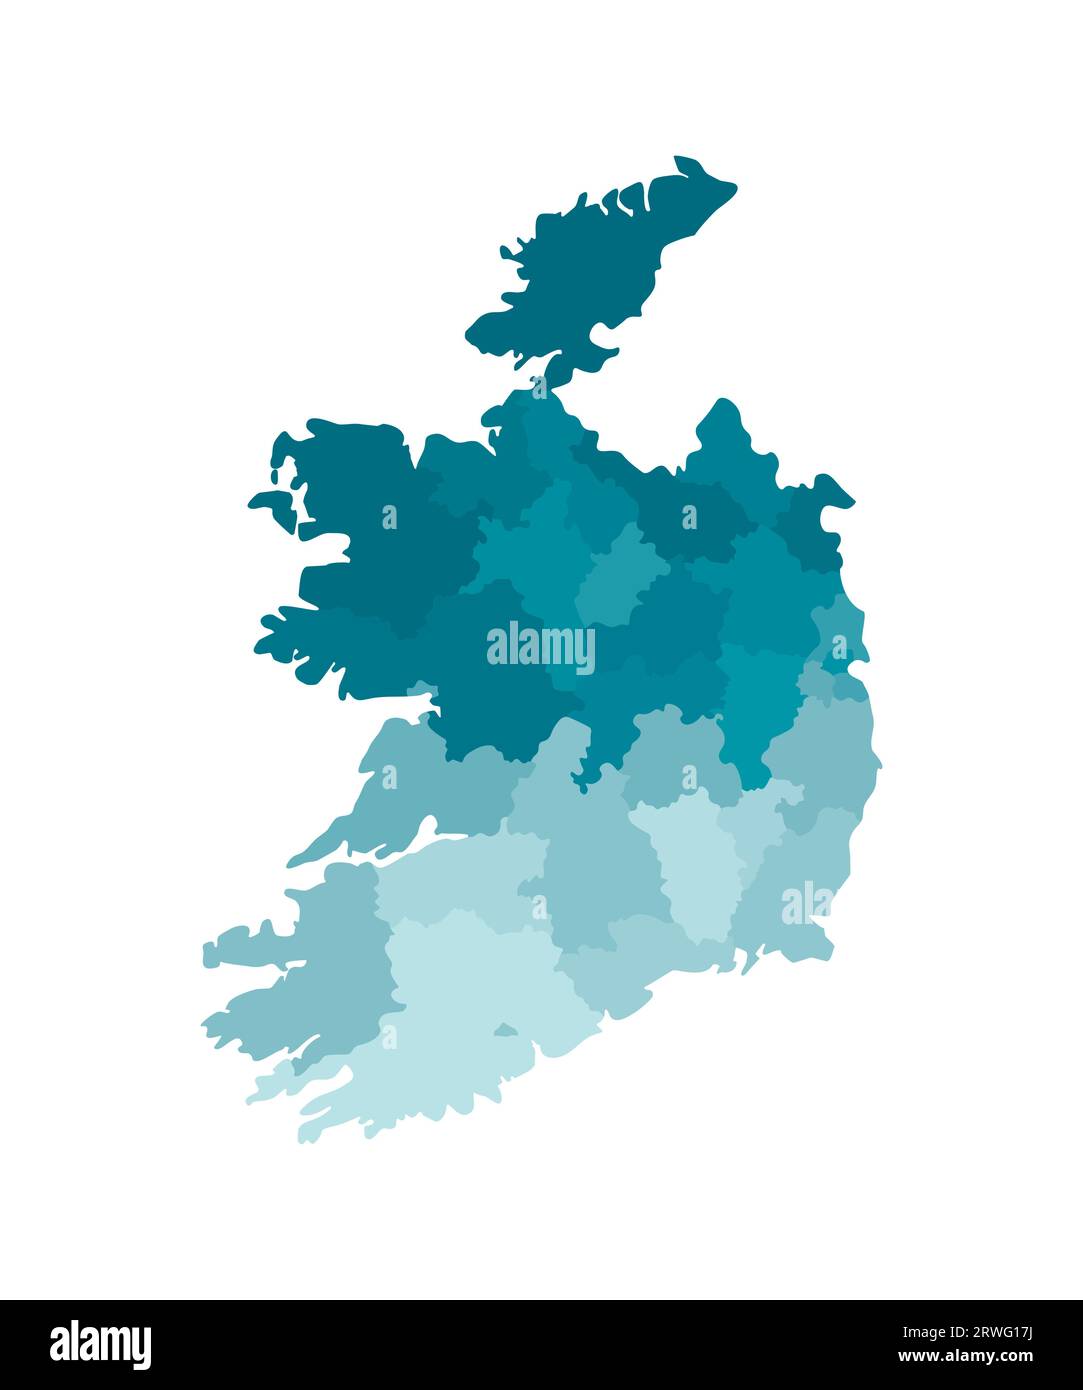 Vektorisolierte Illustration einer vereinfachten Verwaltungskarte der Republik Irland. Grenzen der Regionen. Farbenfrohe, khakifarbene Silhouetten. Stock Vektor